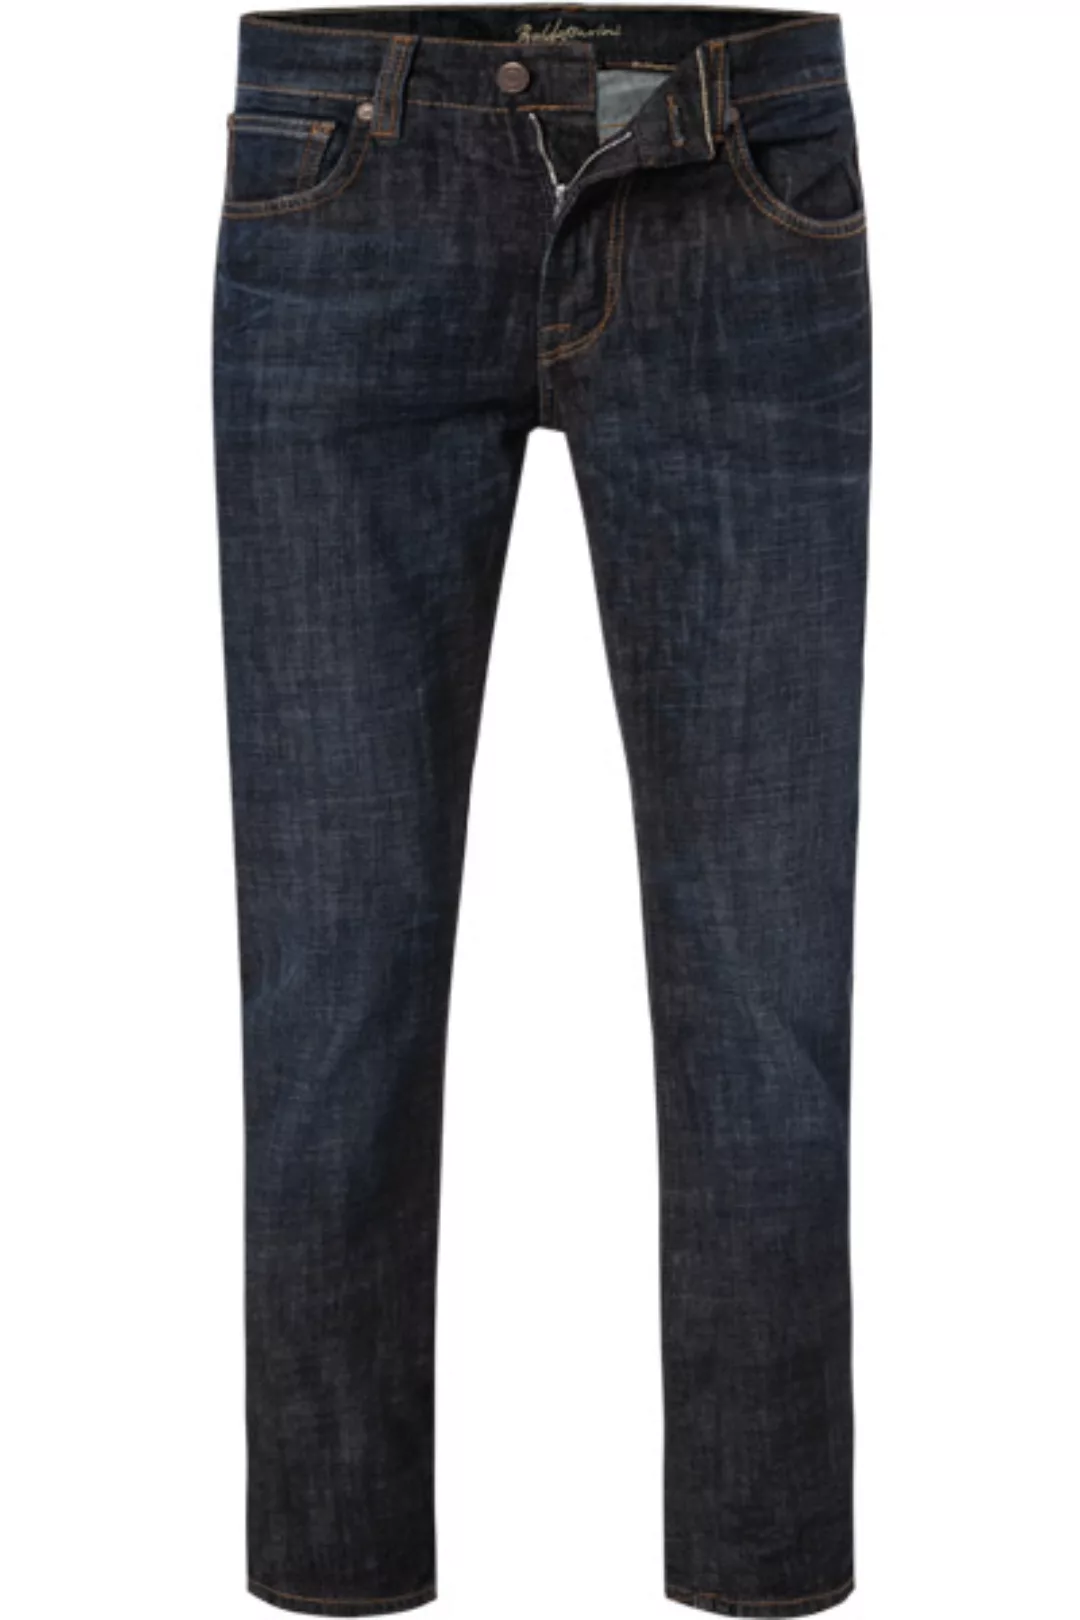 BALDESSARINI Jeans dunkelblau B1 16511.1412/6825 günstig online kaufen